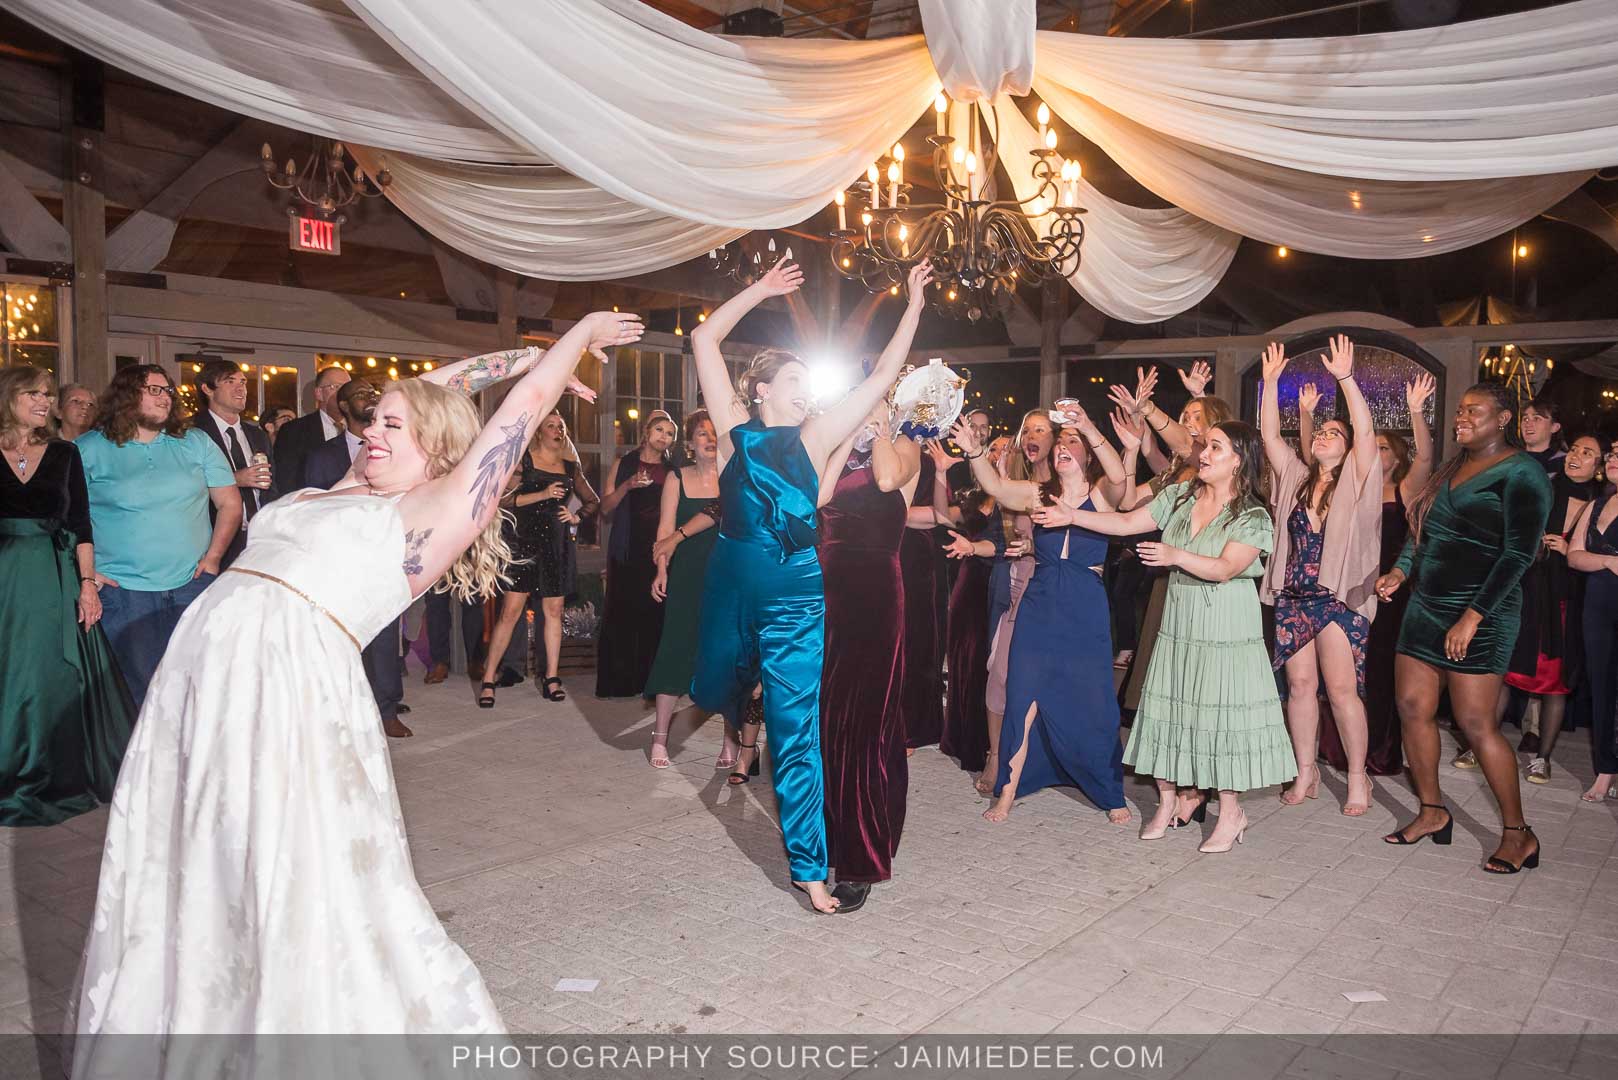 Rocky's Lake Estate Wedding Venue - reception - bride tosses bouquet inside pavilion with ceiling drapes - bouquet toss